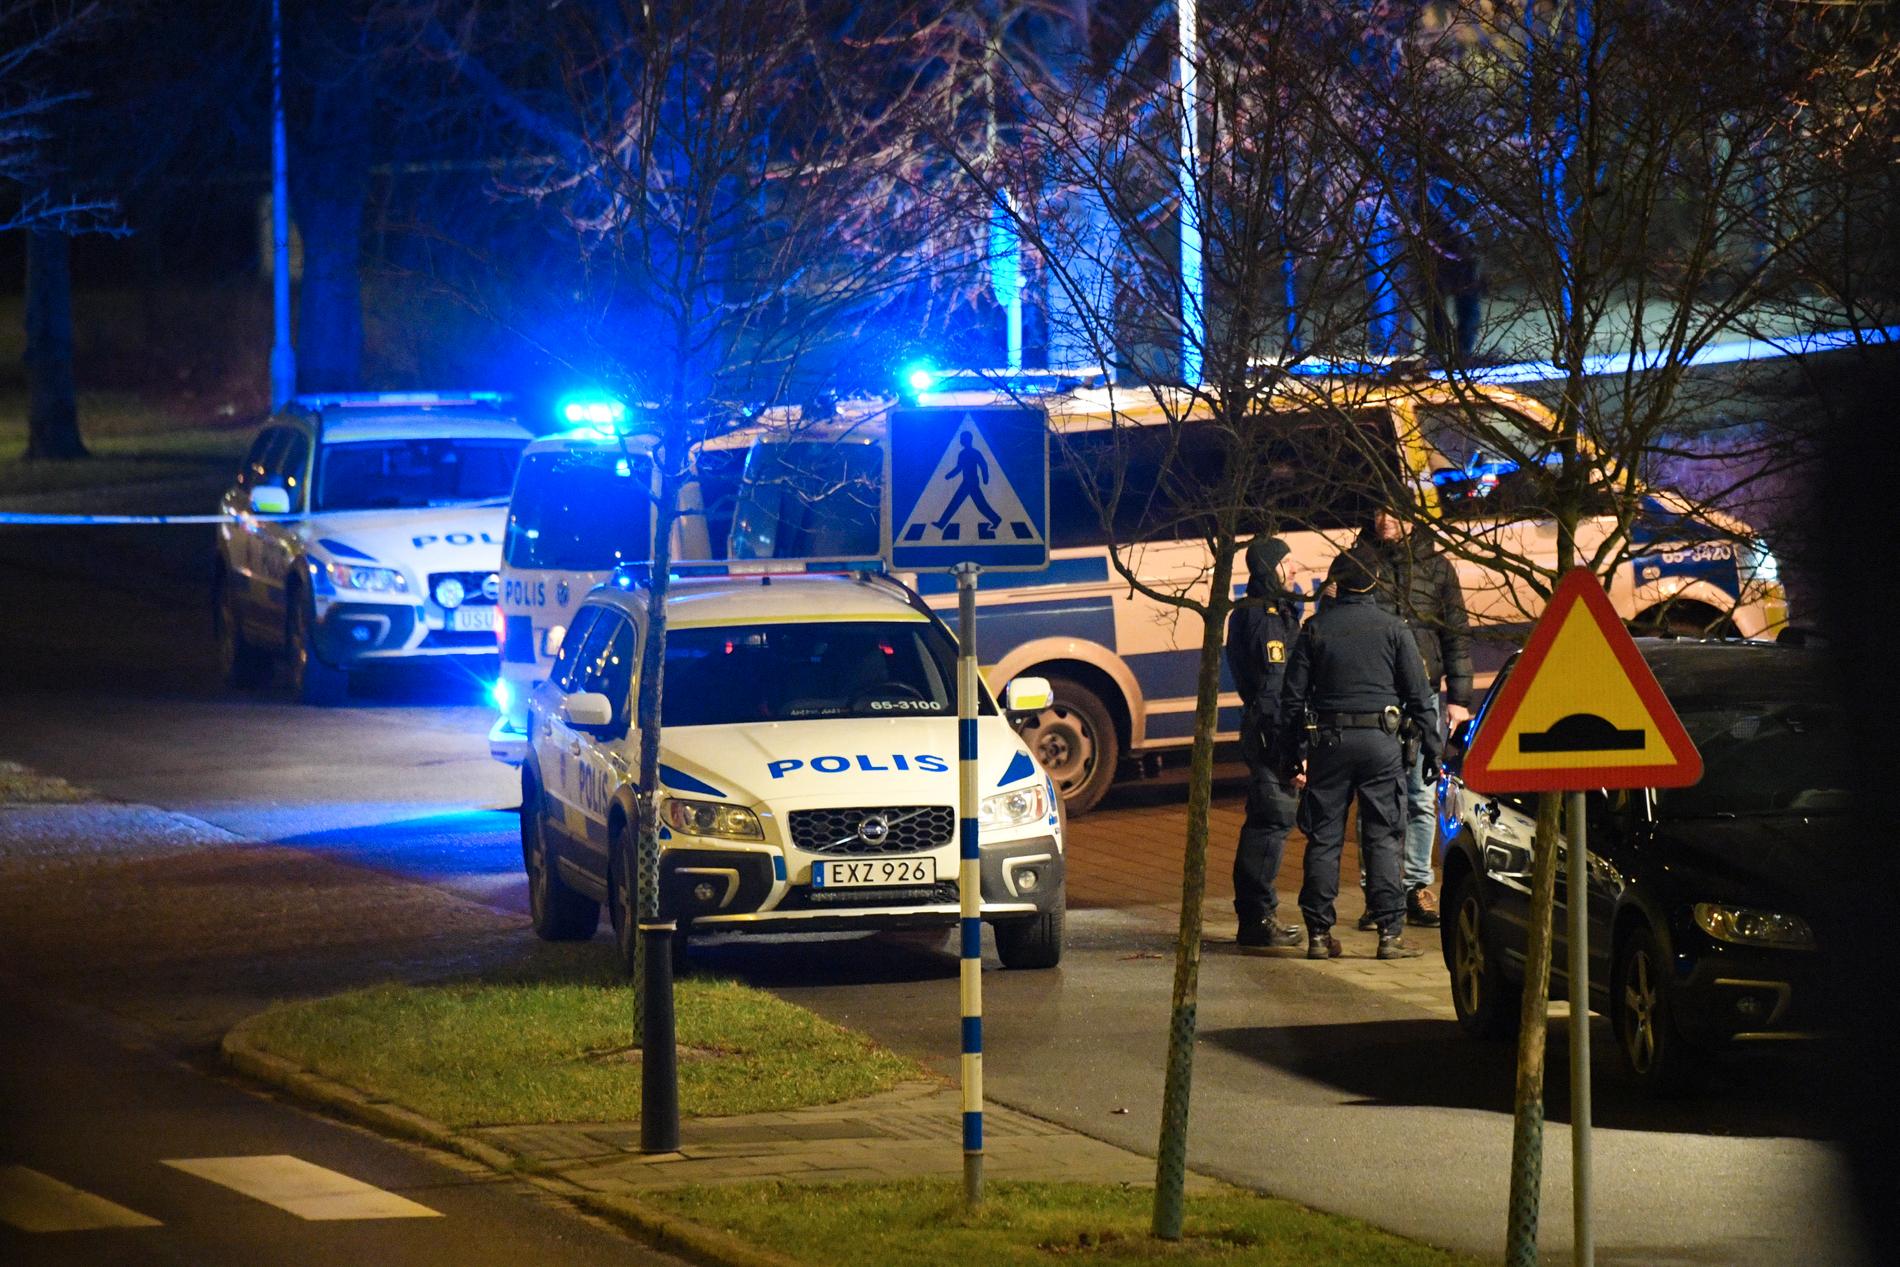  INGEN SKADD: Onsdag kveld ble det meldt om en eksplosjon utenfor politistasjonen i Rosengård i Malmö. Ingen personer skal være skadd, men det er materielle skader på biler. 